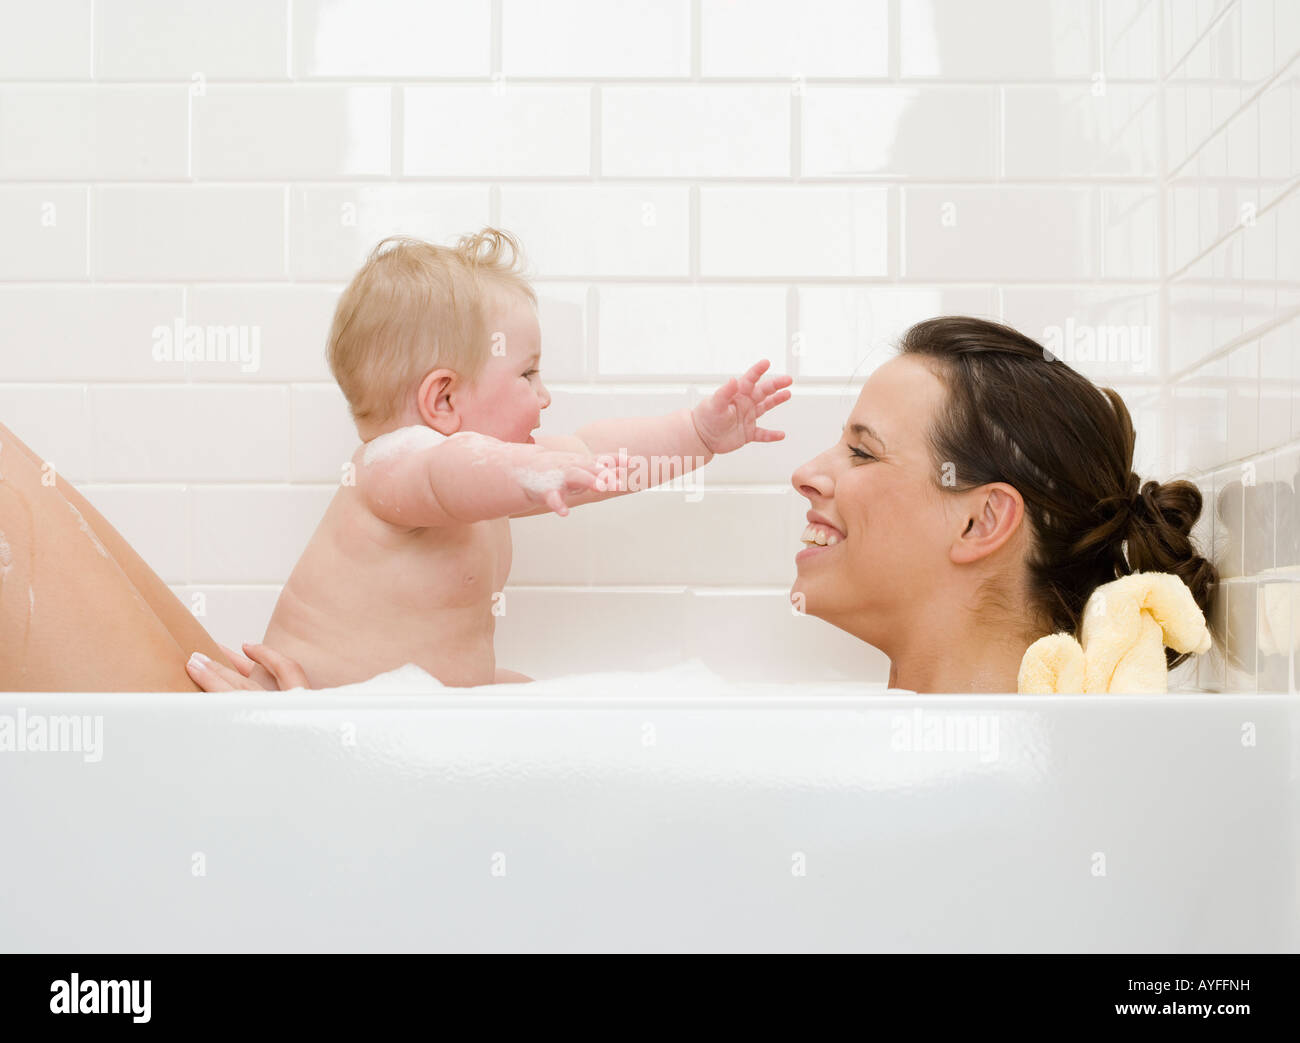 Совместное купание. Мама купает ребенка. Совместное купание с малышом. Совместное купание с грудничком. Совместное купание с грудничком в ванной.